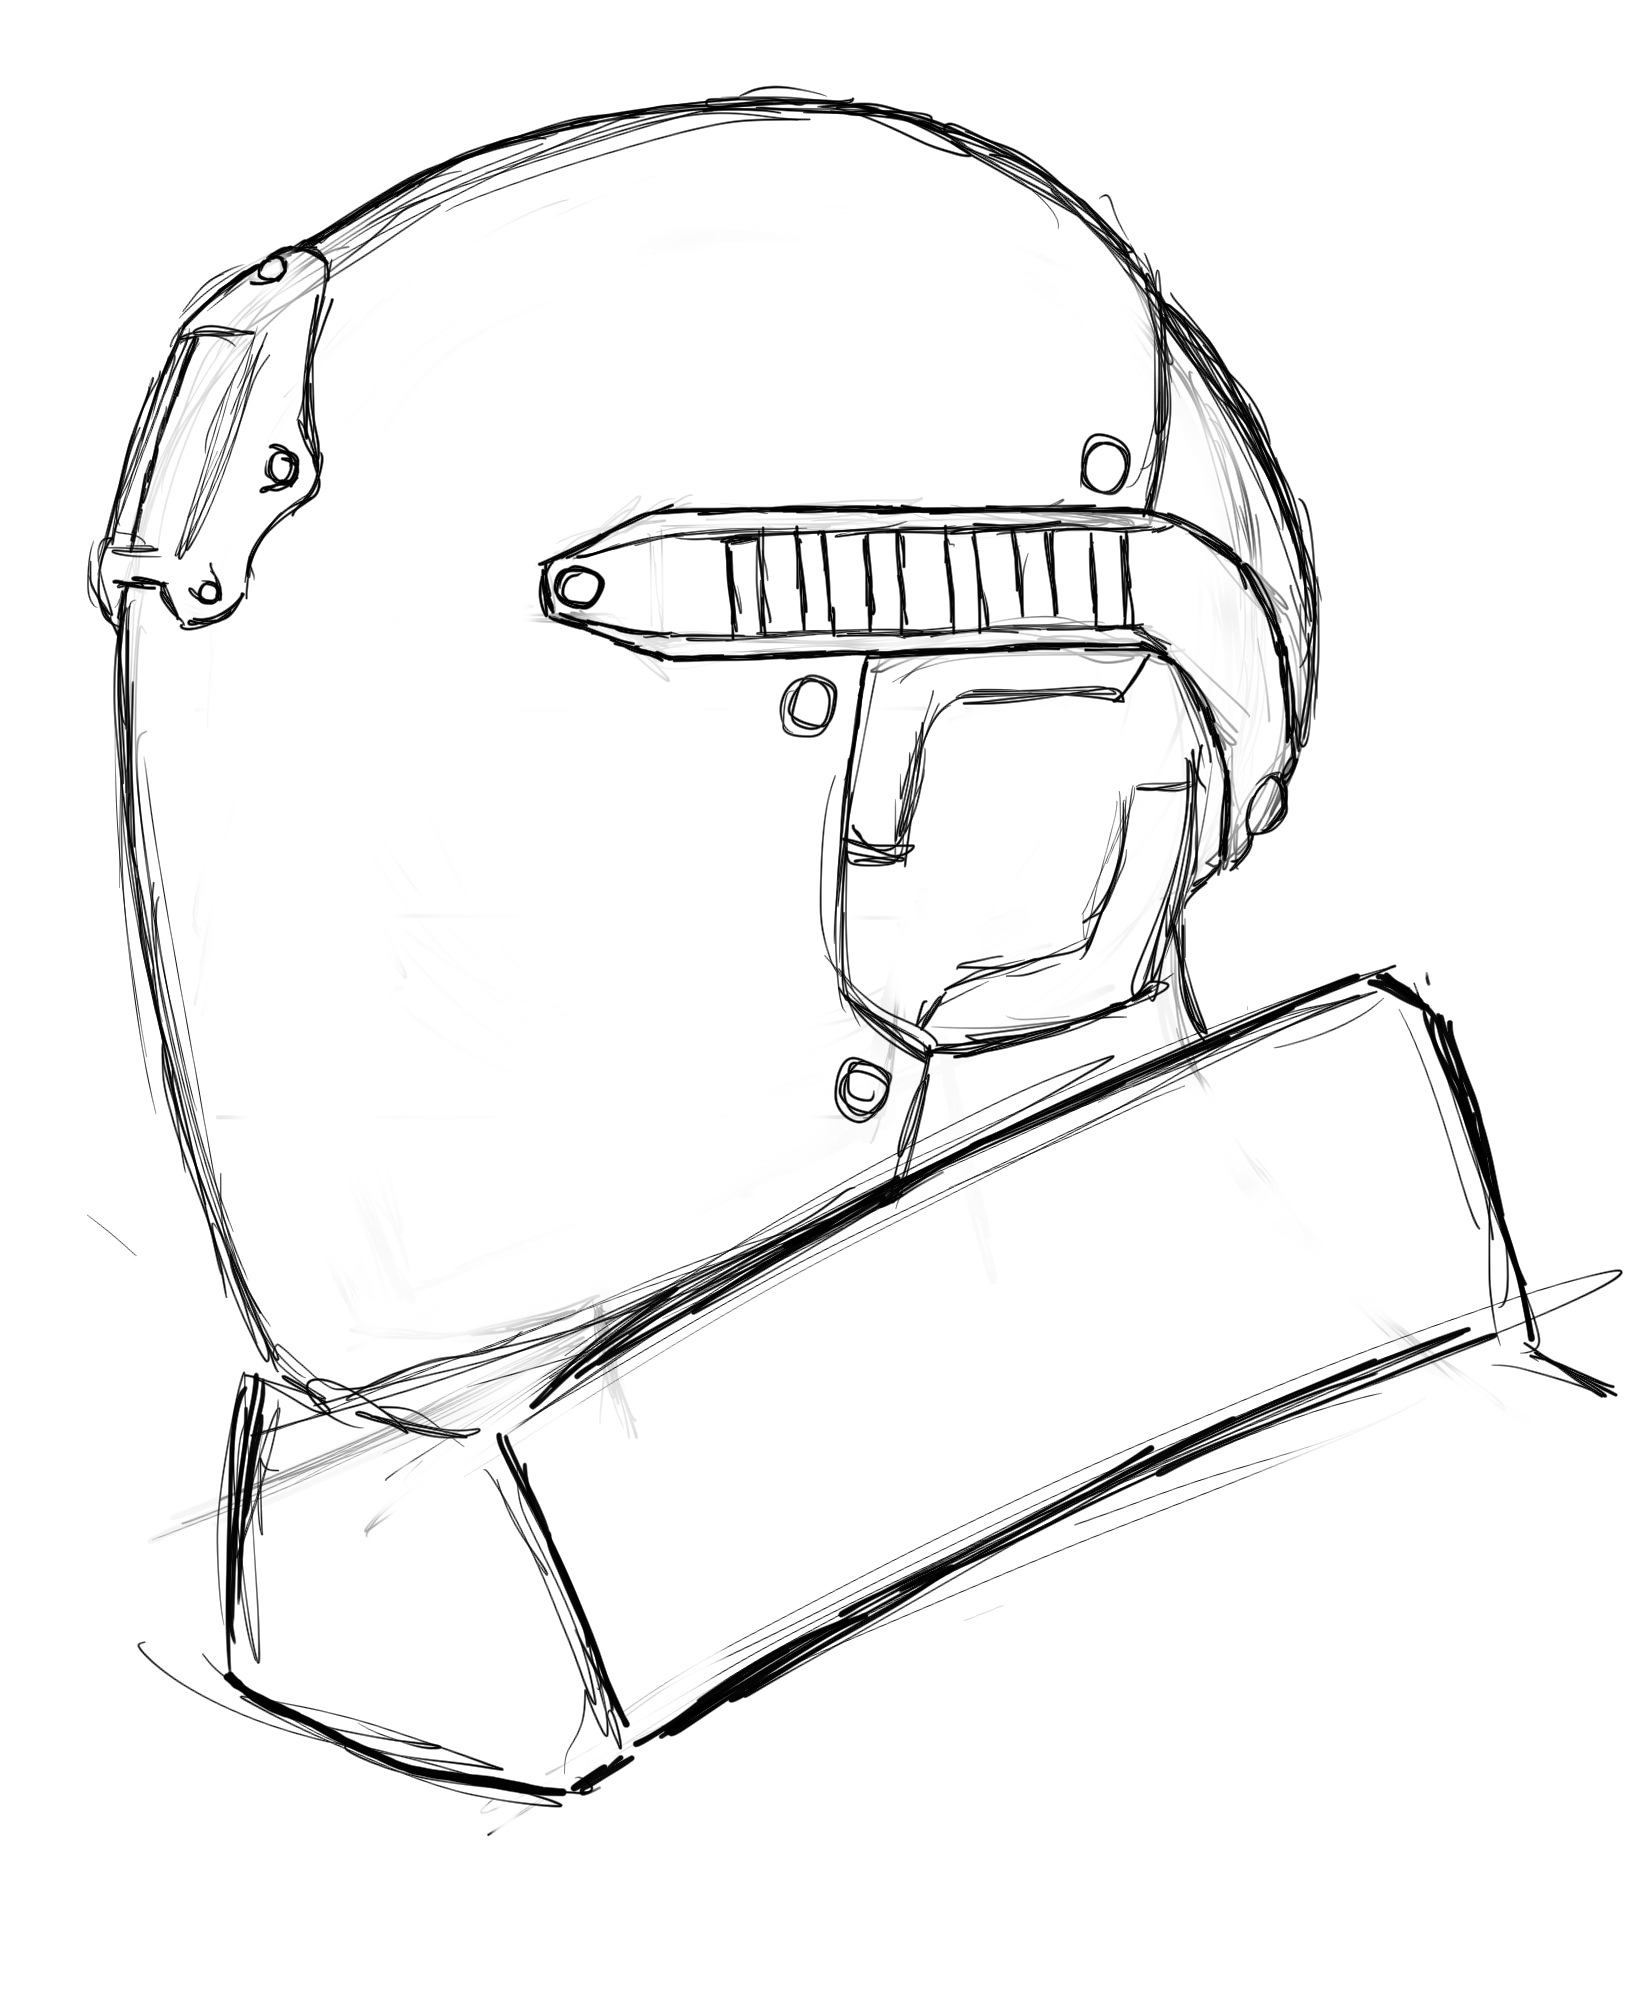 шлем рисунок из пубг фото 36